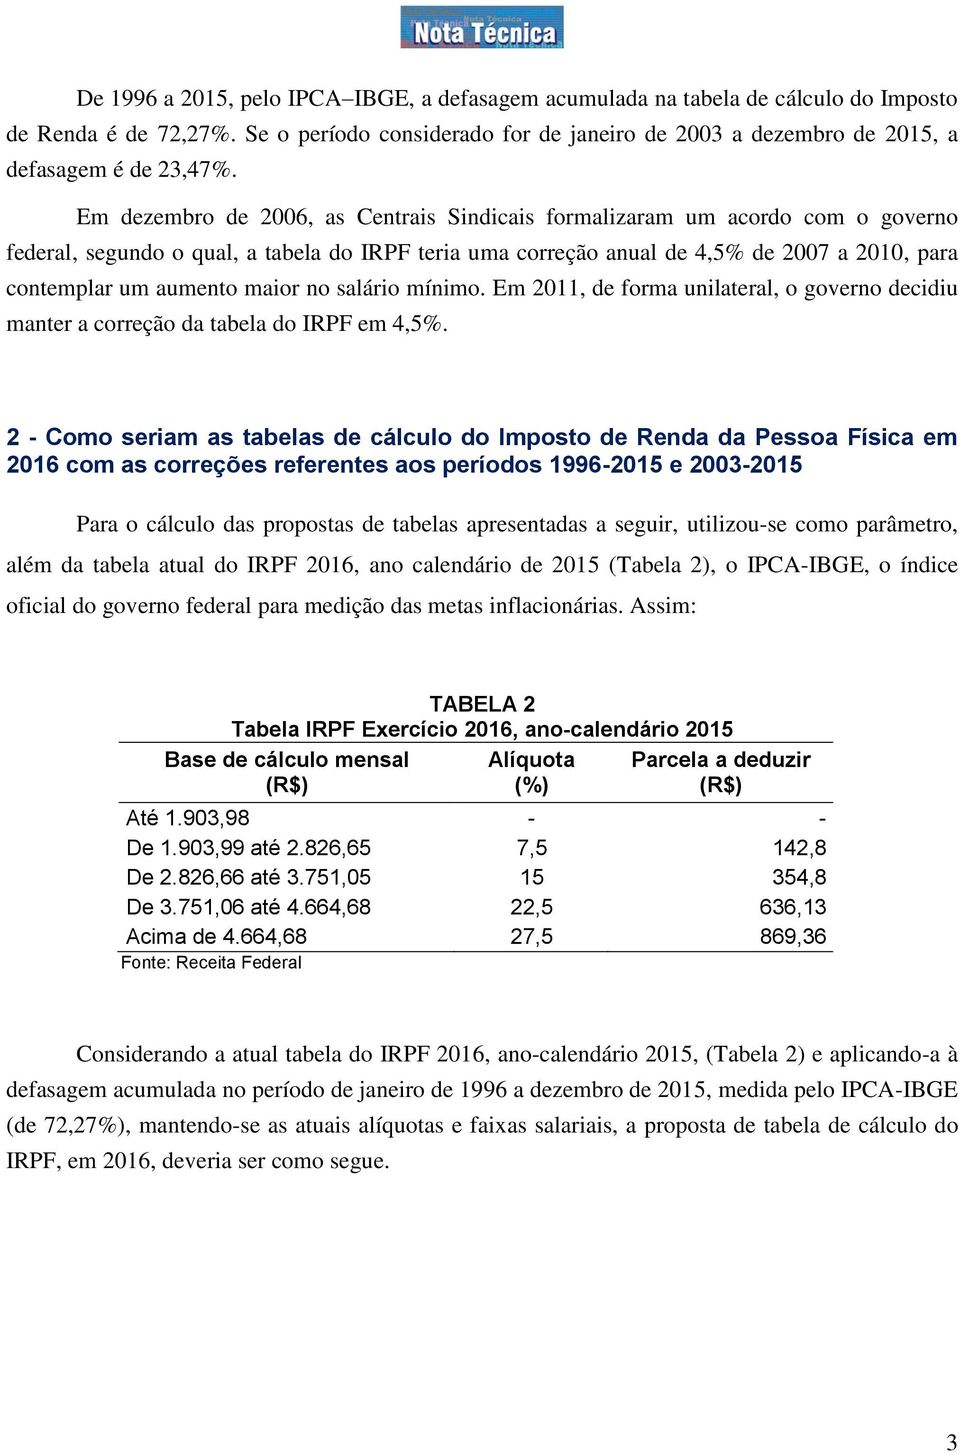 maior no salário mínimo. Em 2011, de forma unilateral, o governo decidiu manter a correção da tabela do IRPF em 4,5%.